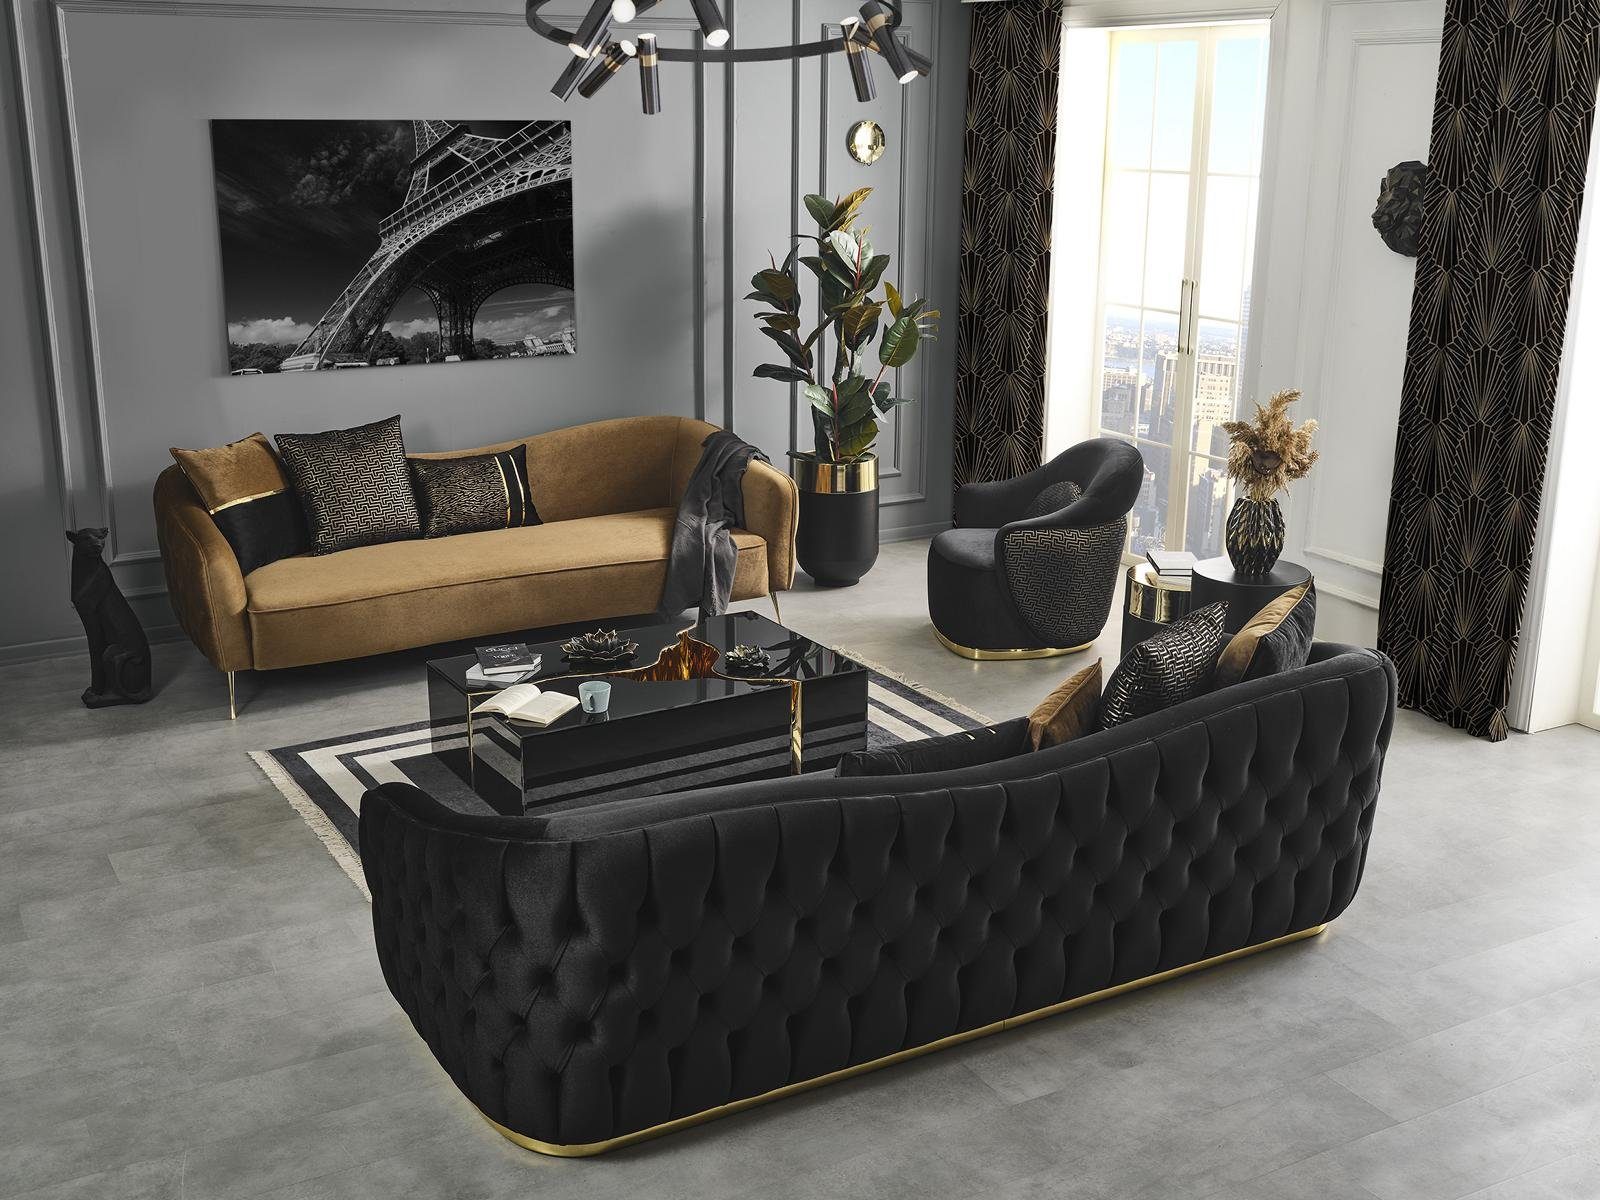 JVmoebel Sofa, Sofagarnitur 431 Set Couchtisch Design Garnitur Neu 4tlg Textil Sitzer